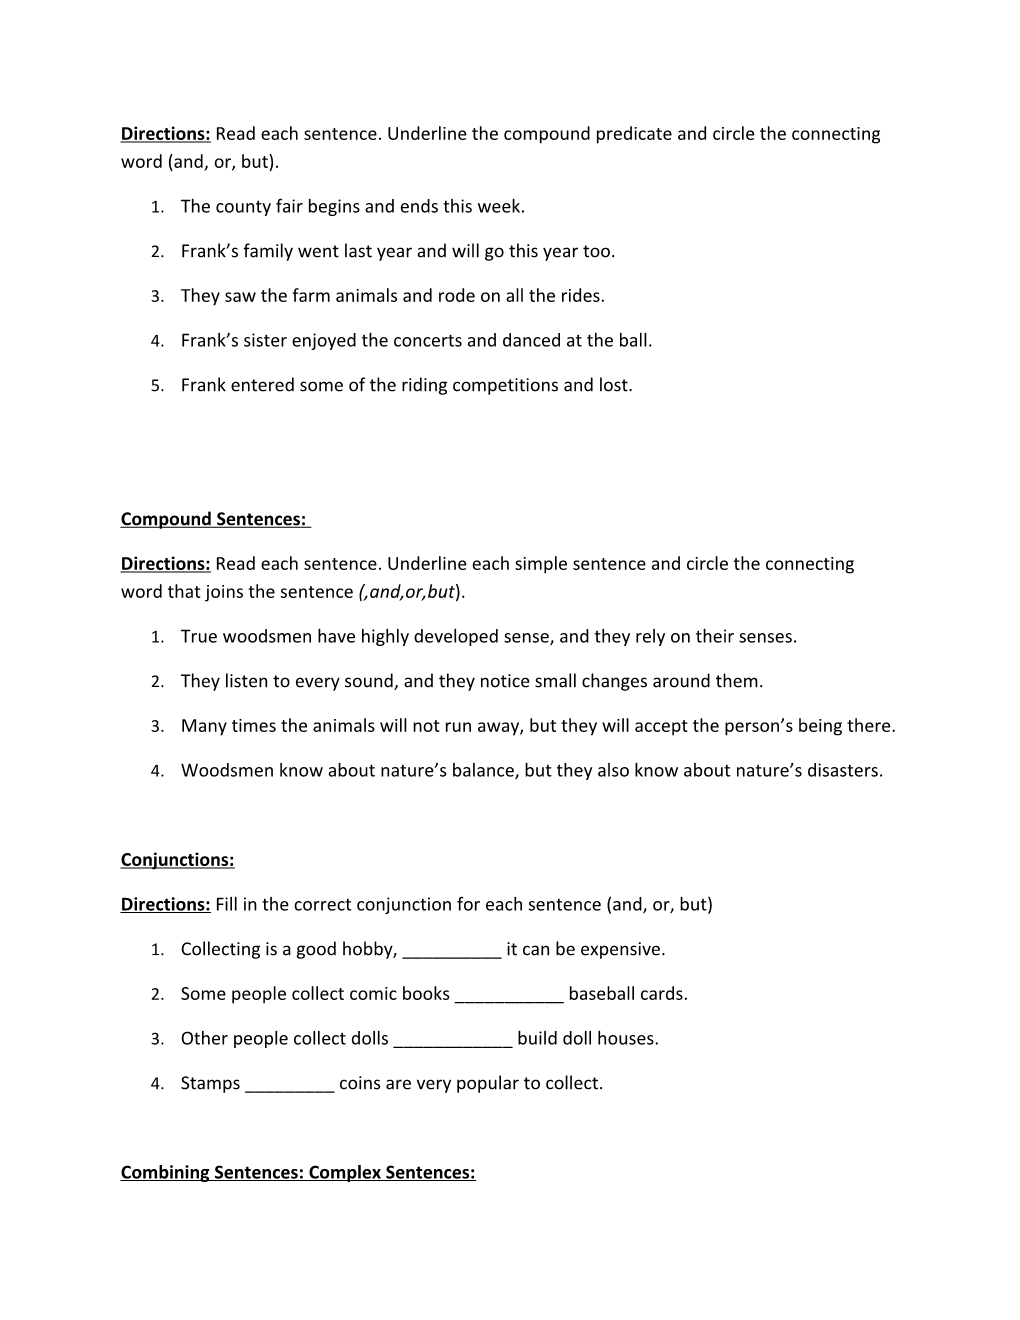 Unit 1 Study Guide(P. 41-51)